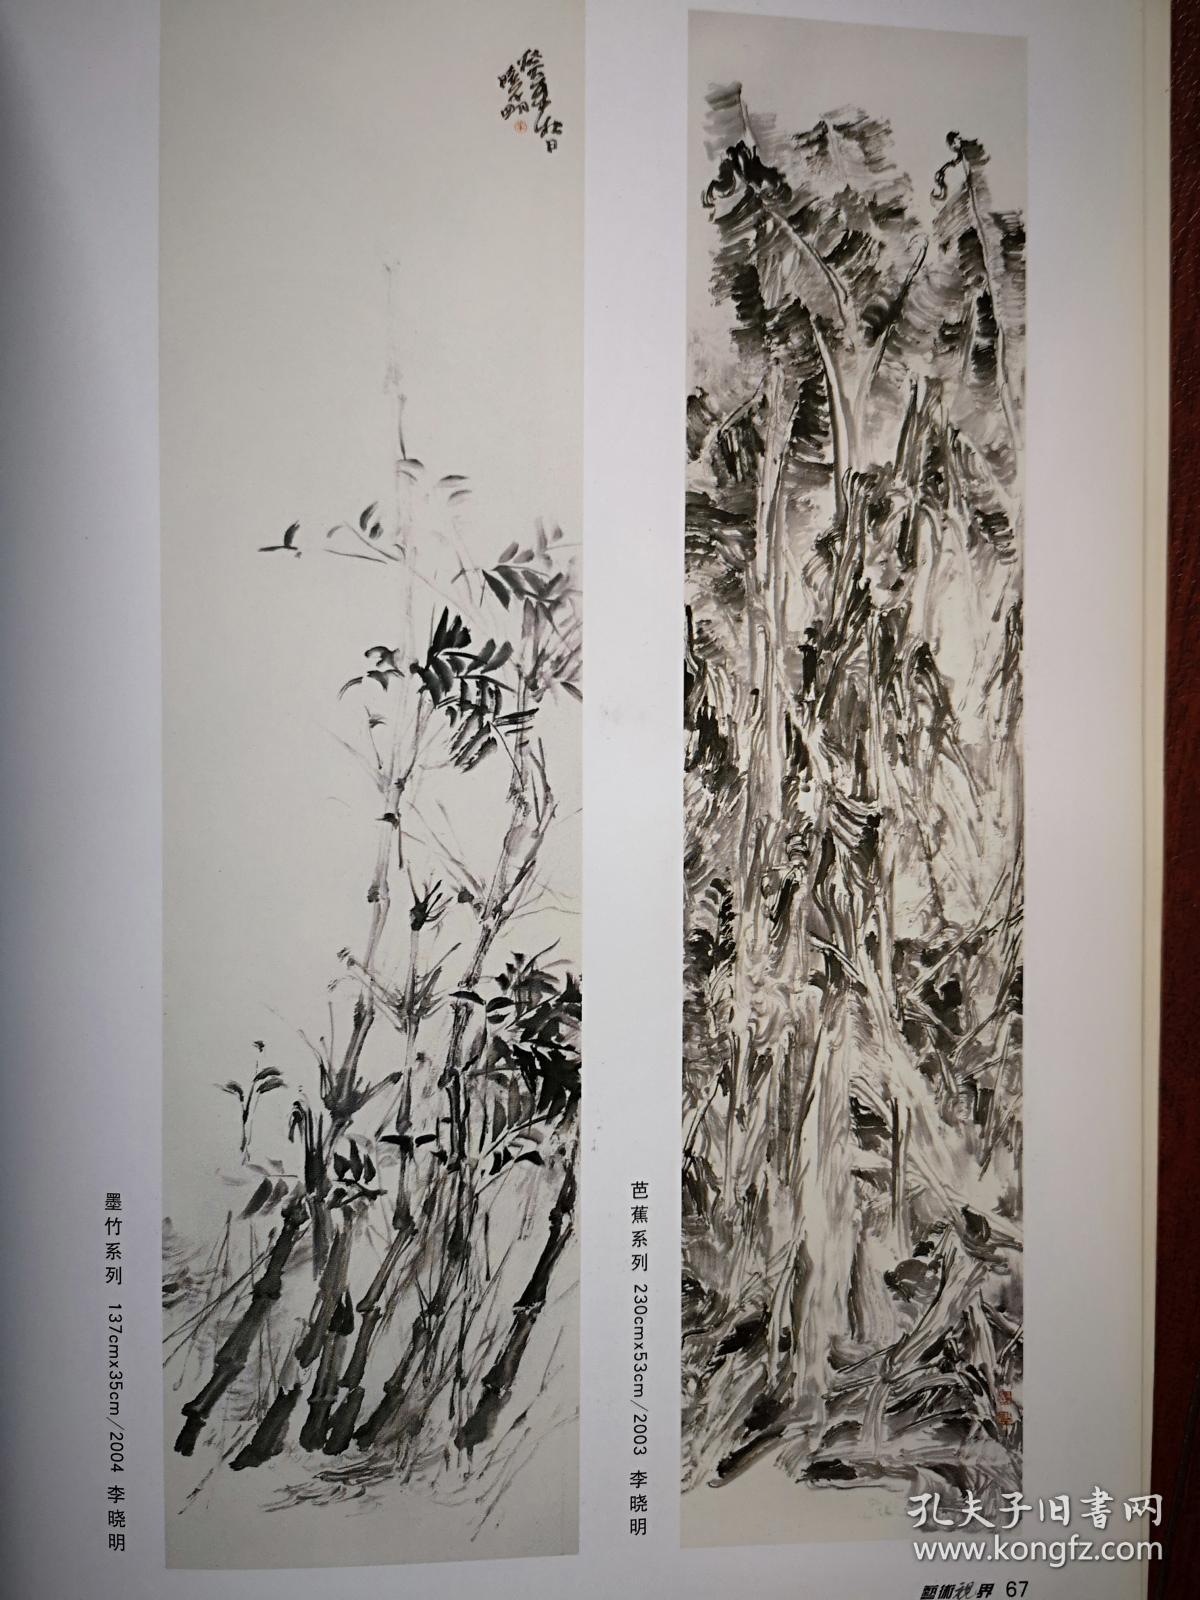 彩铜版美术插页（单张），李晓明水墨画《墨竹》《芭蕉》